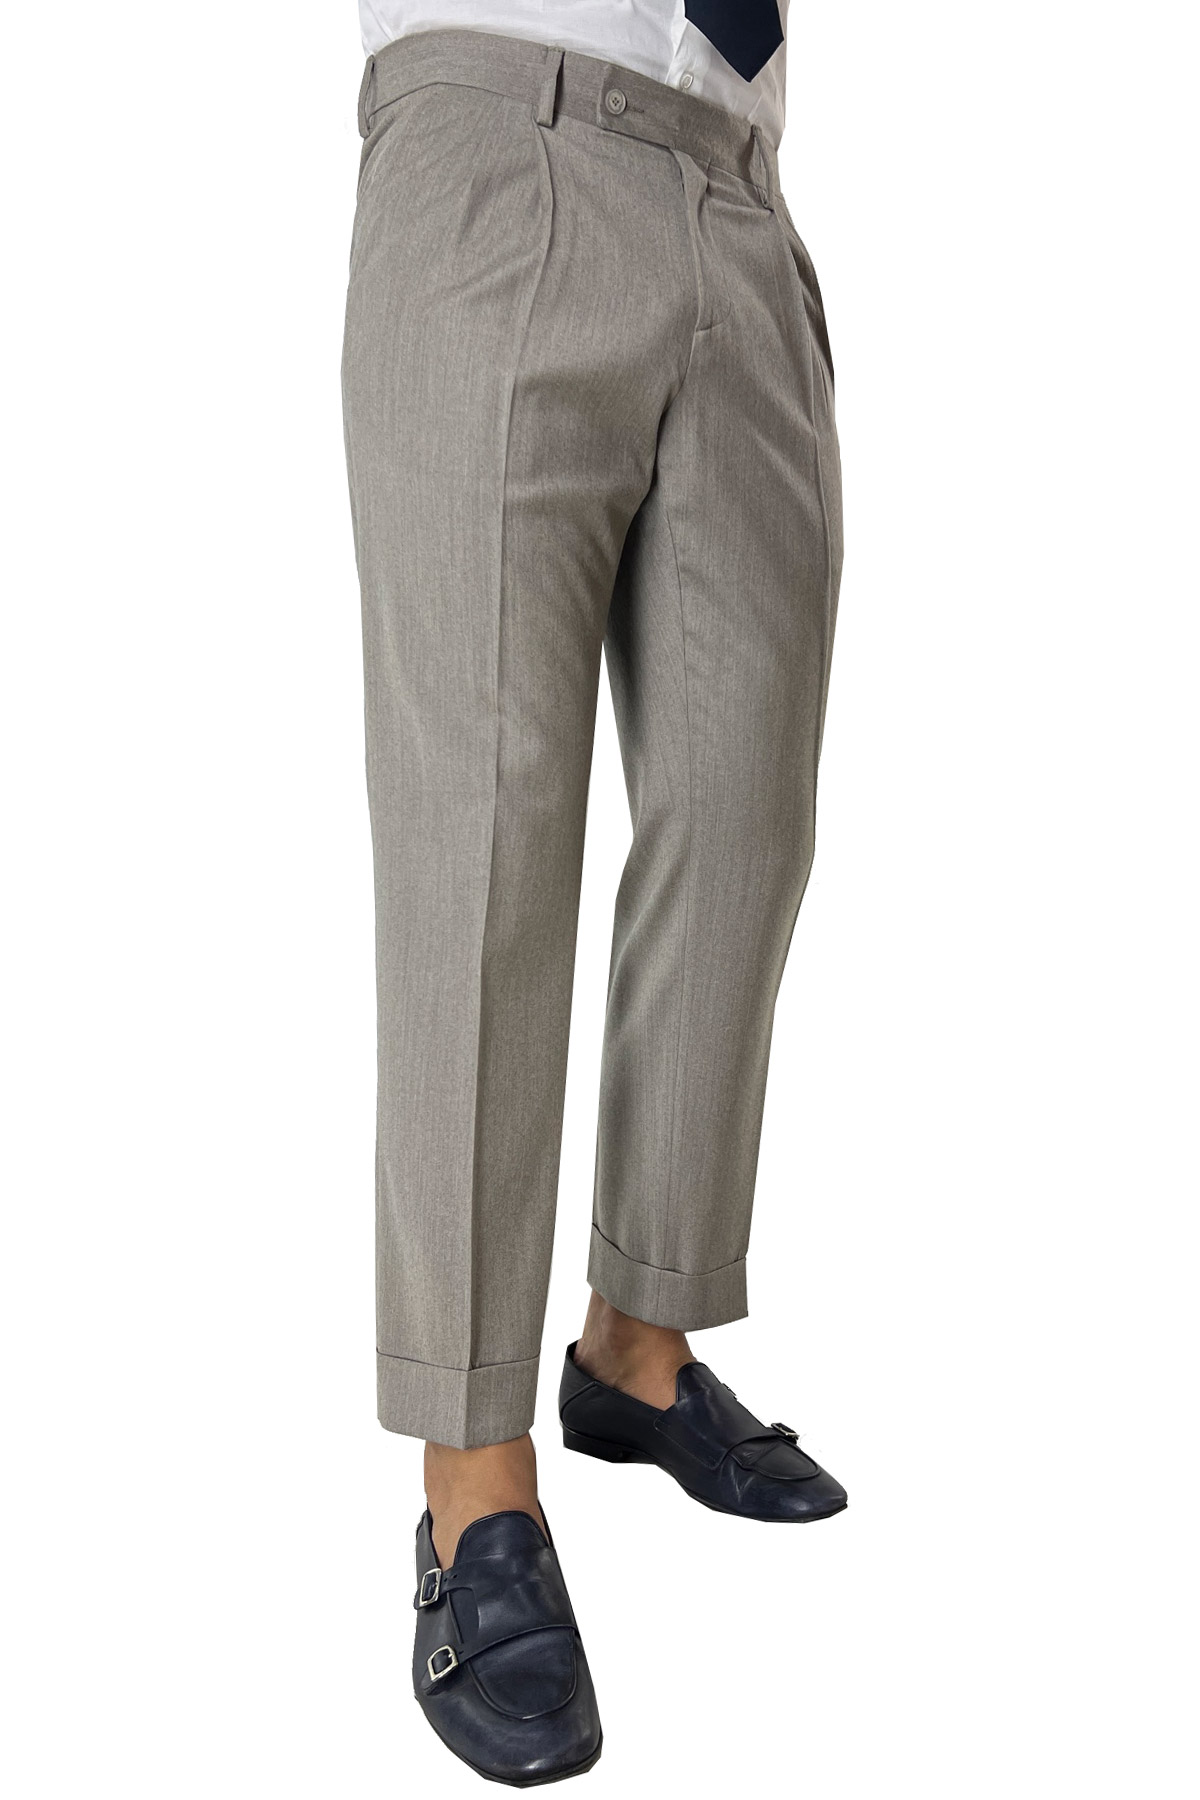 Pantalone uomo beige vita alta tasca america in lana flanella con doppia pinces